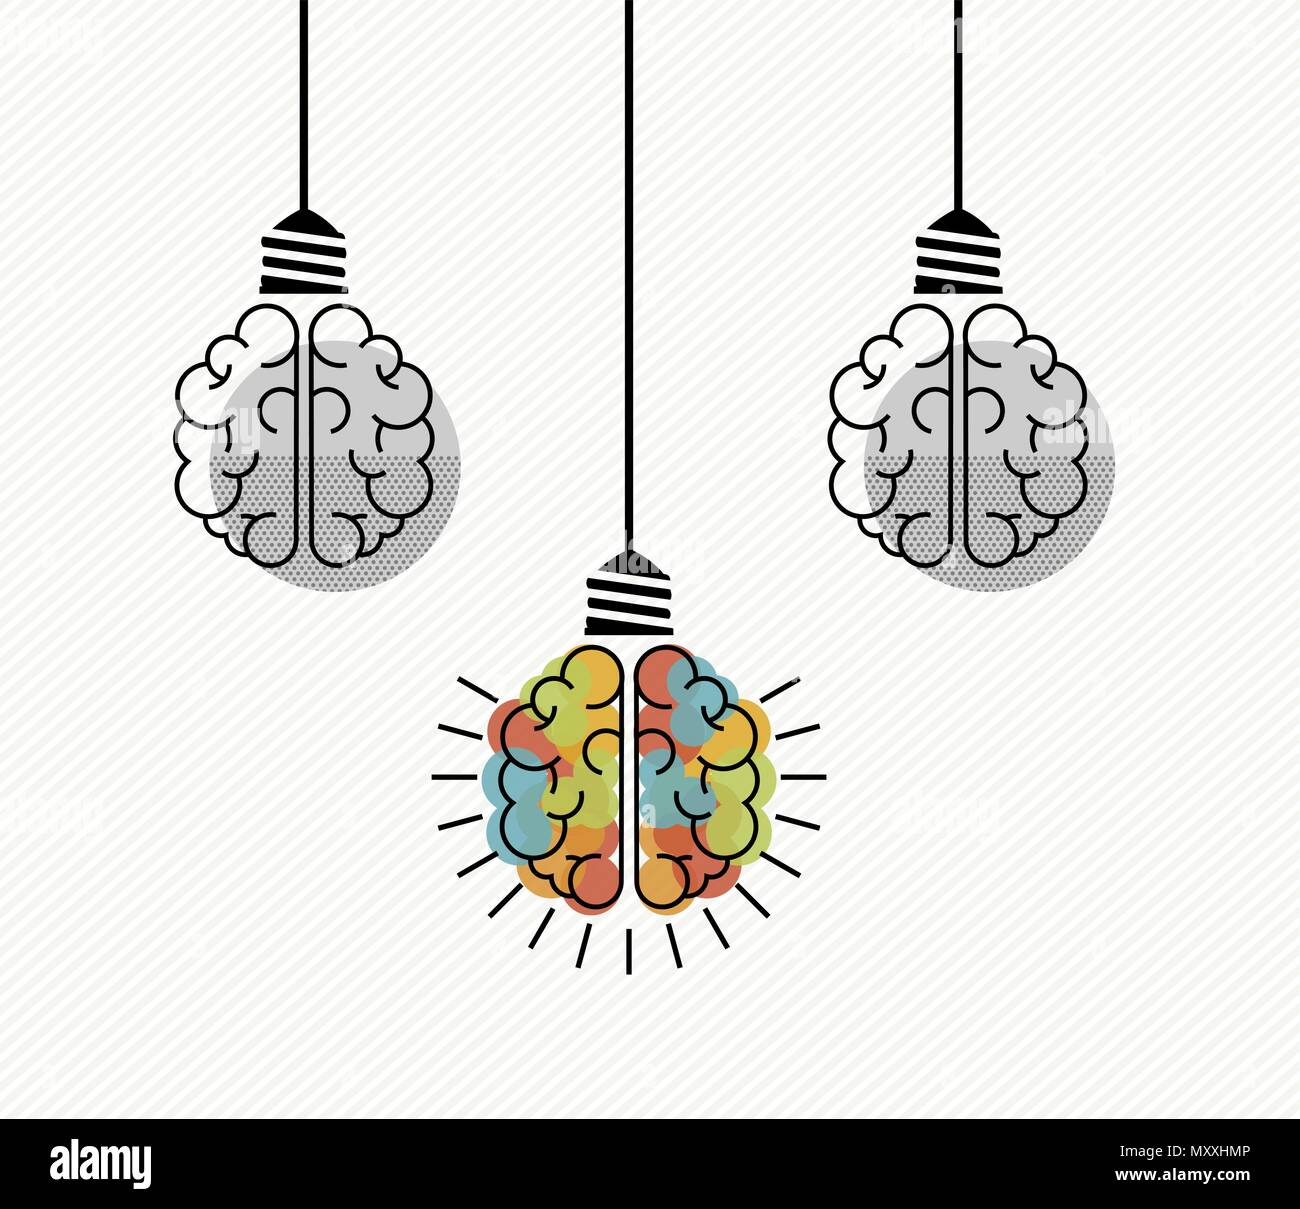 Kreatives Denken Konzept Abbildung des menschlichen Gehirns als elektrische Glühbirne für business solutions, Brainstorming. EPS 10 Vektor. Stock Vektor